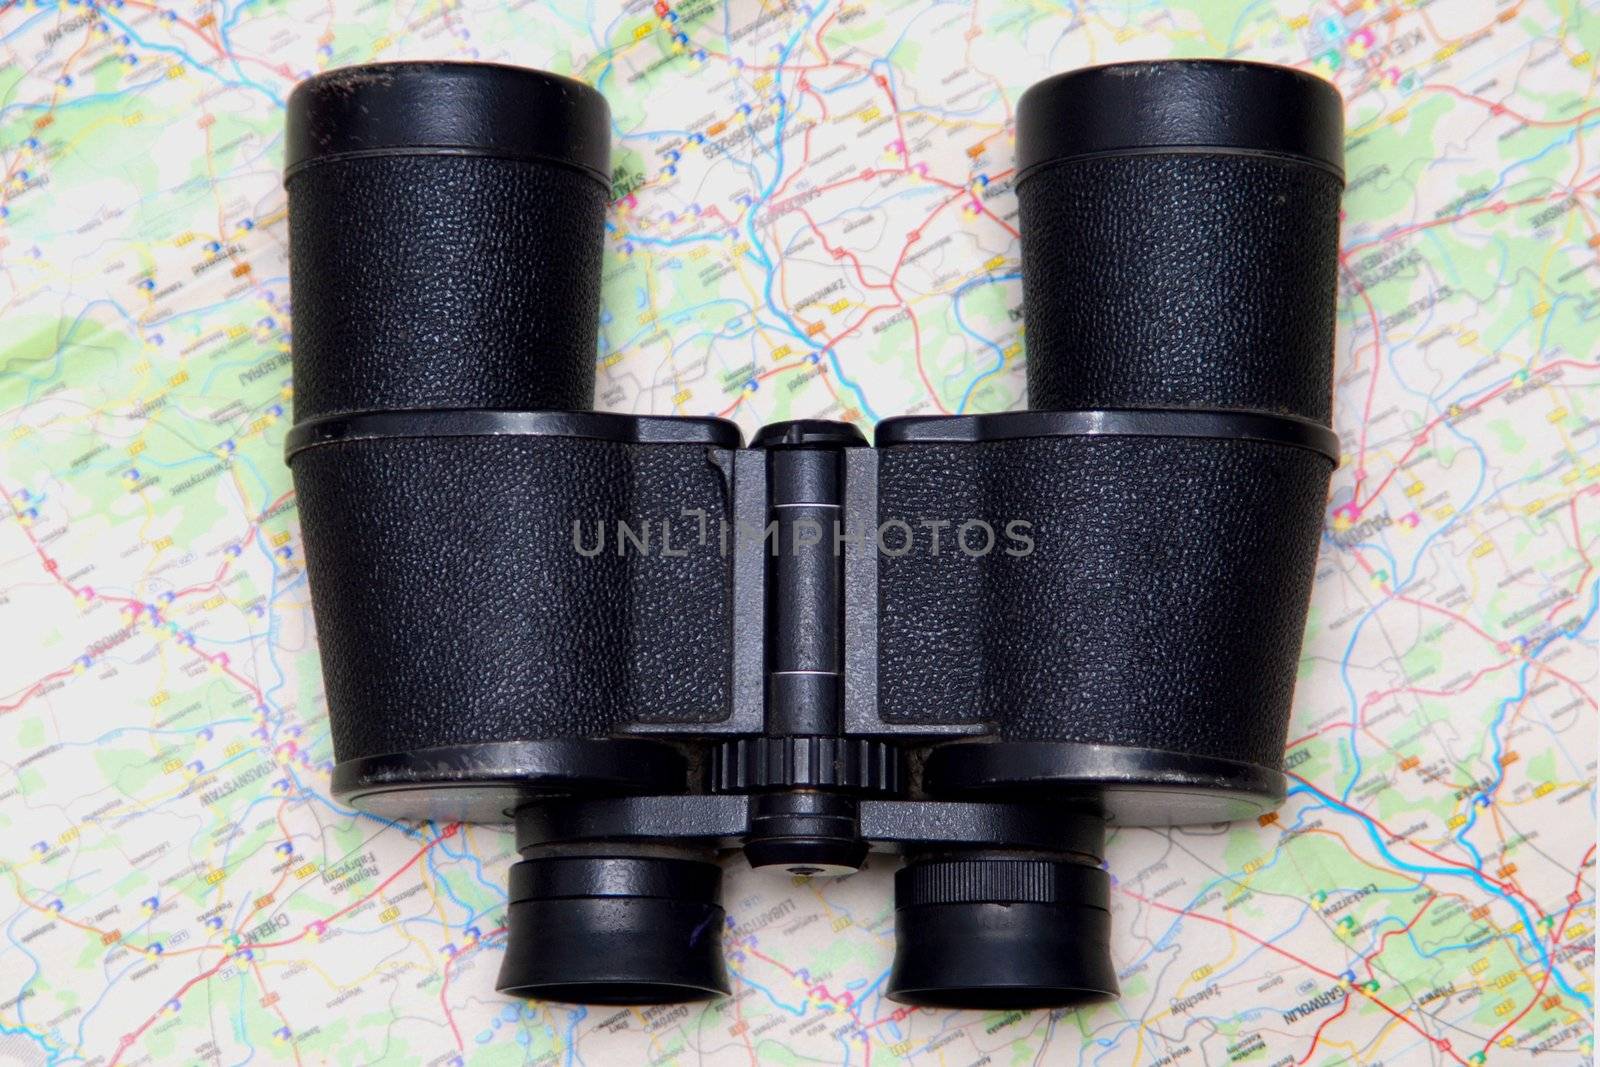 Binoculars and map by Yaurinko